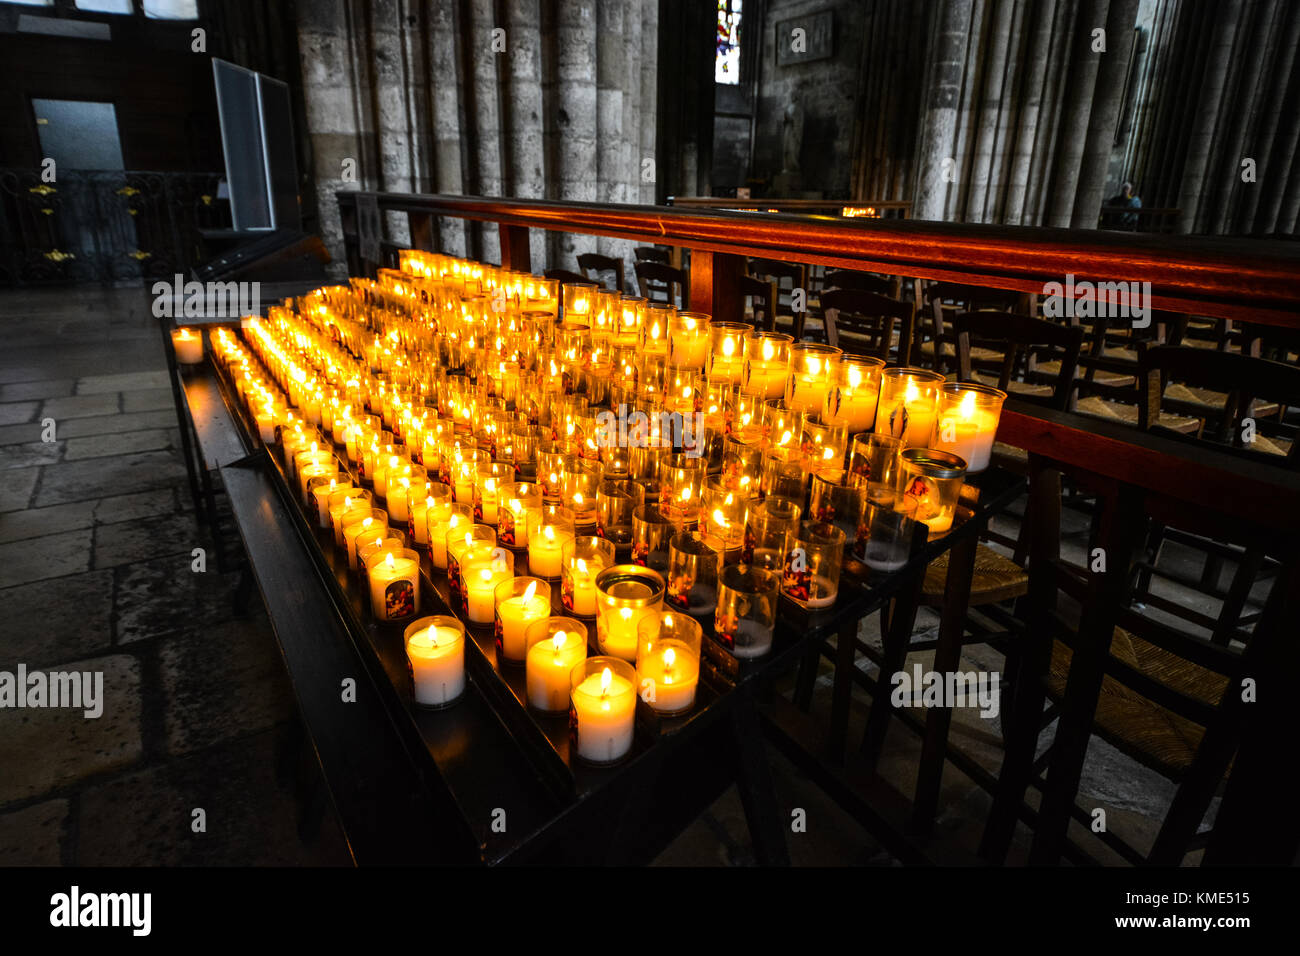 La masterizzazione di preghiera o candele votive vicino la navata della cattedrale di Rouen Francia Foto Stock